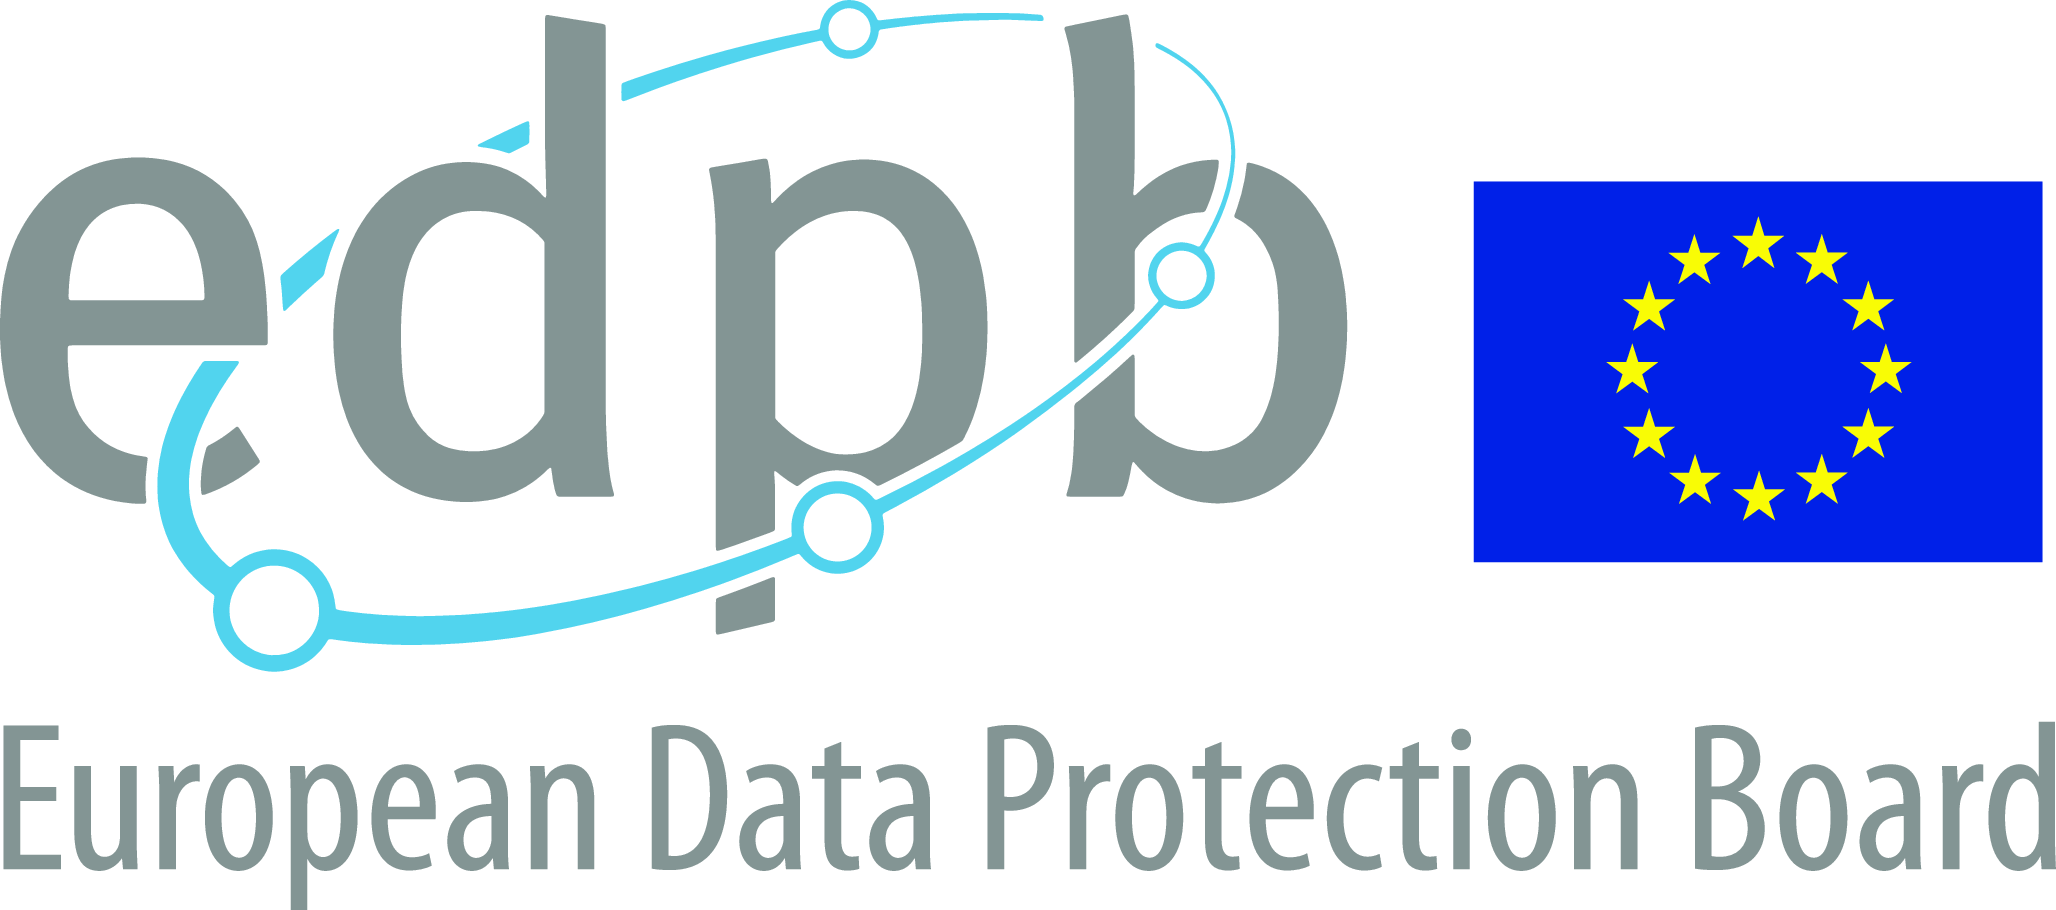 EDPB přijal pokyny k evropské směrnici o soukromí a elektronických komunikacích